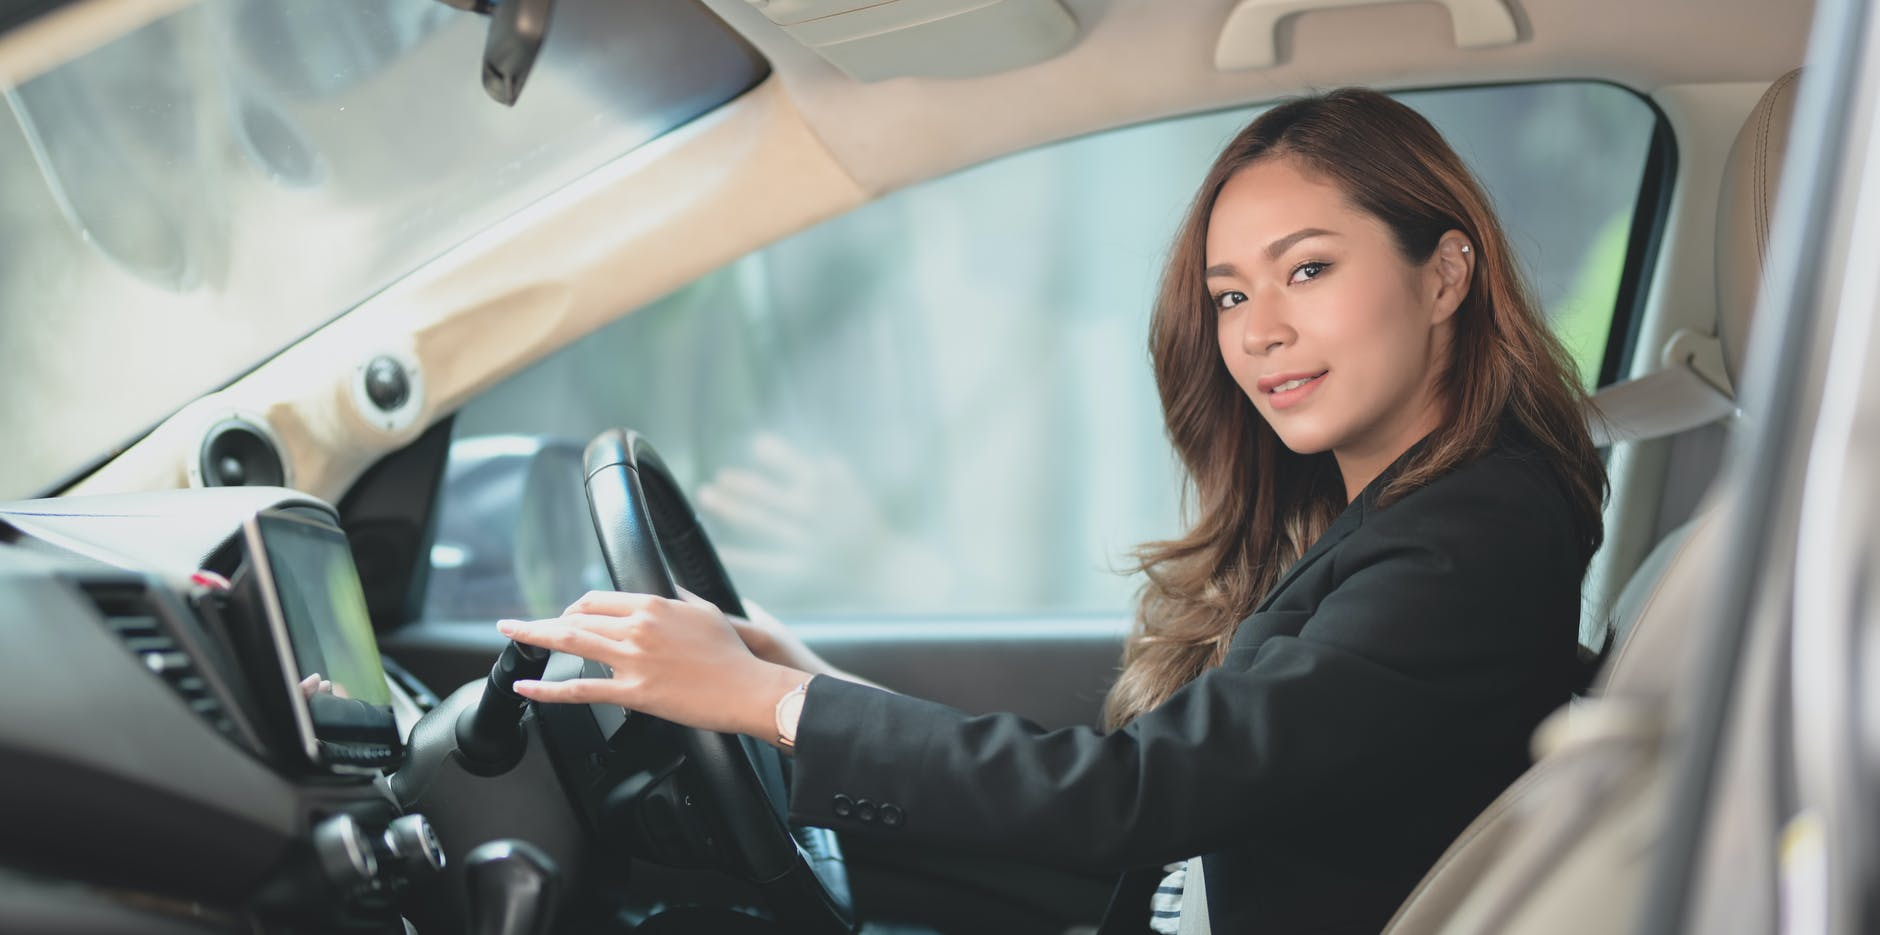 Вождение автомобиля первый. Уроки вождения. Машина для начинающего водителя женщины. Начинающий водитель женщина. Навыки вождения автомобиля.